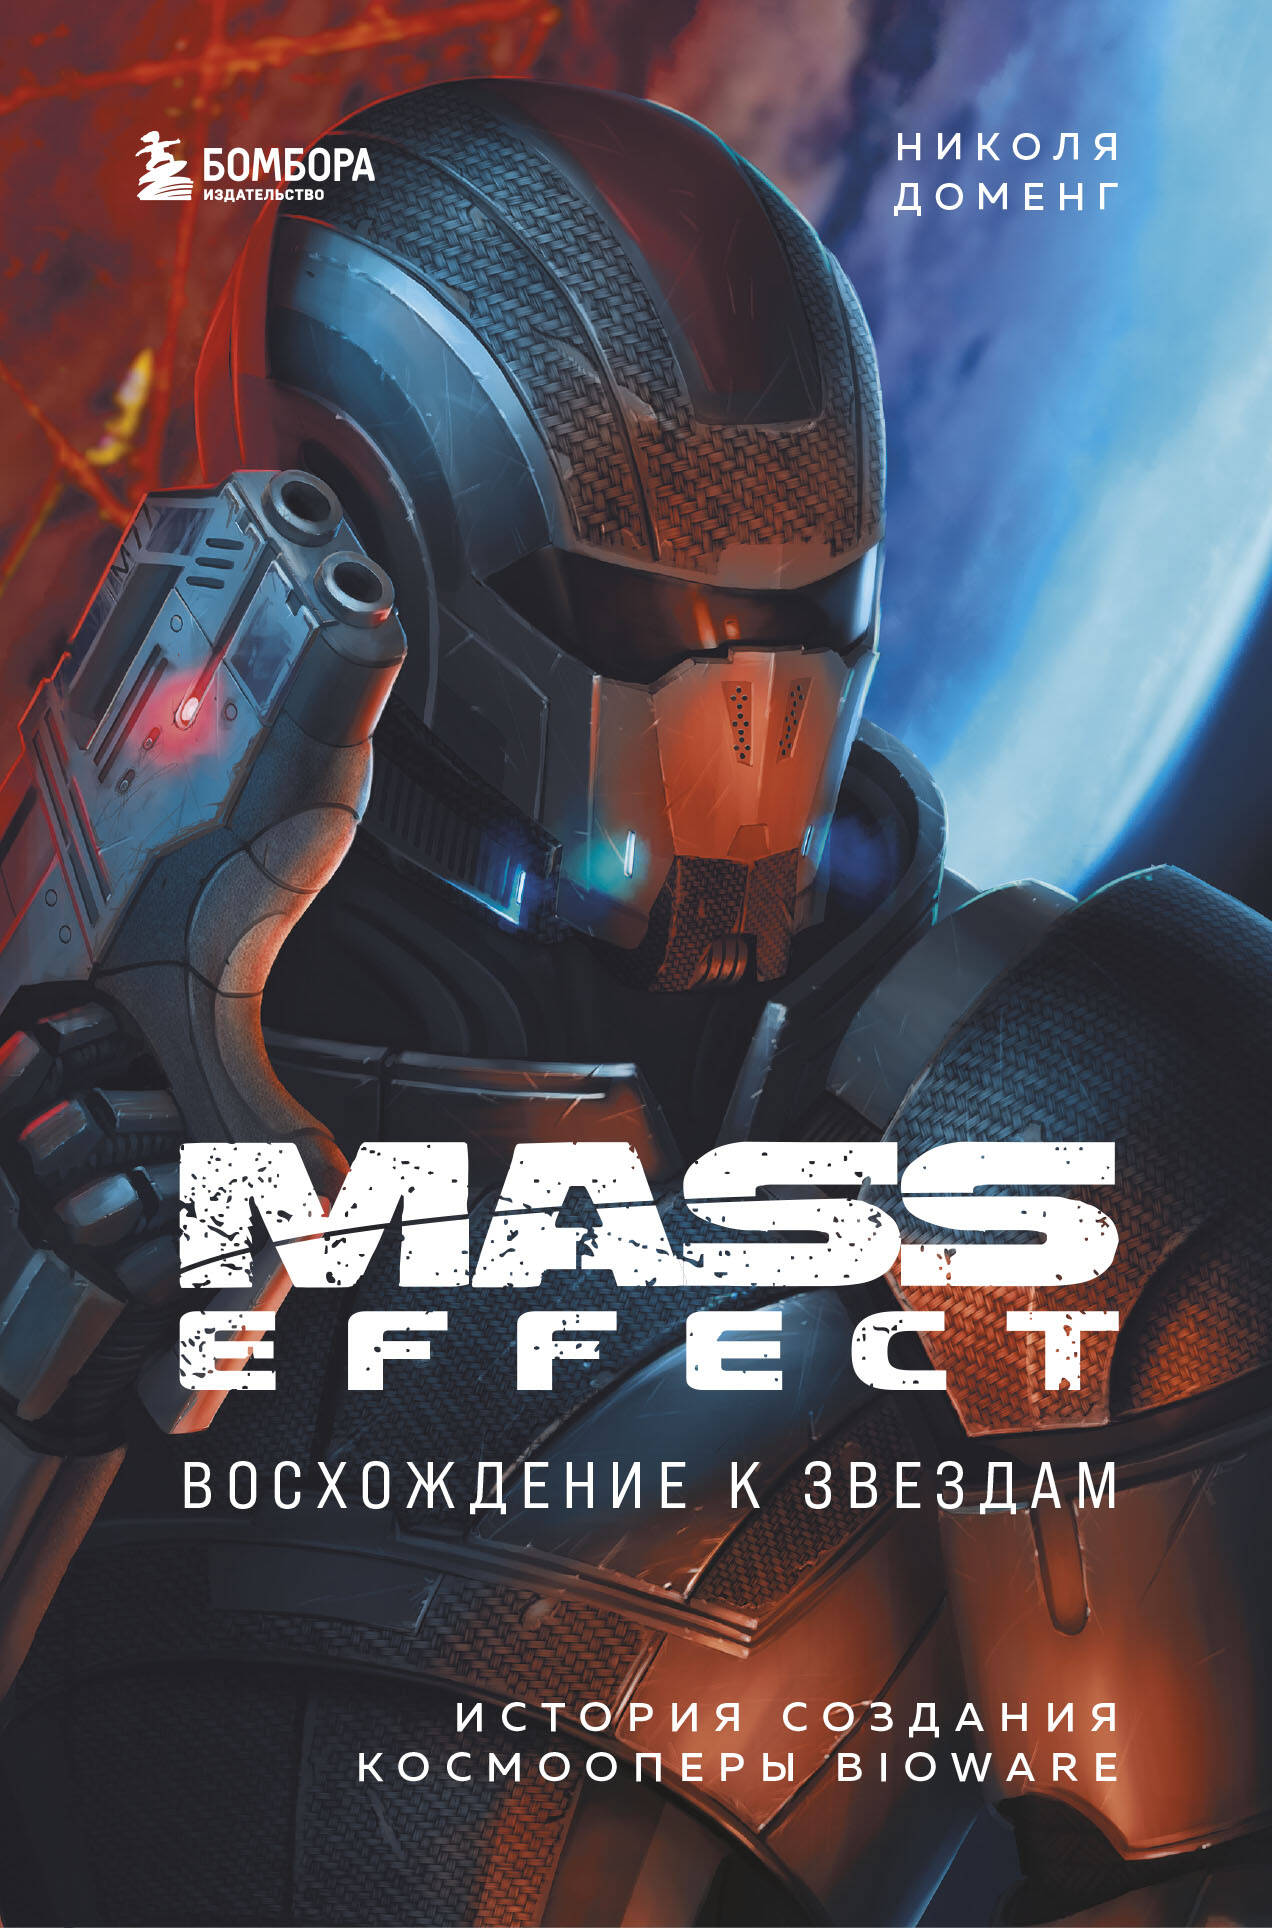 Доменг Николя Mass Effect: восхождение к звездам. История создания космооперы BioWare чехол mypads mass effect legendary edition для xiaomi black shark 5 pro задняя панель накладка бампер